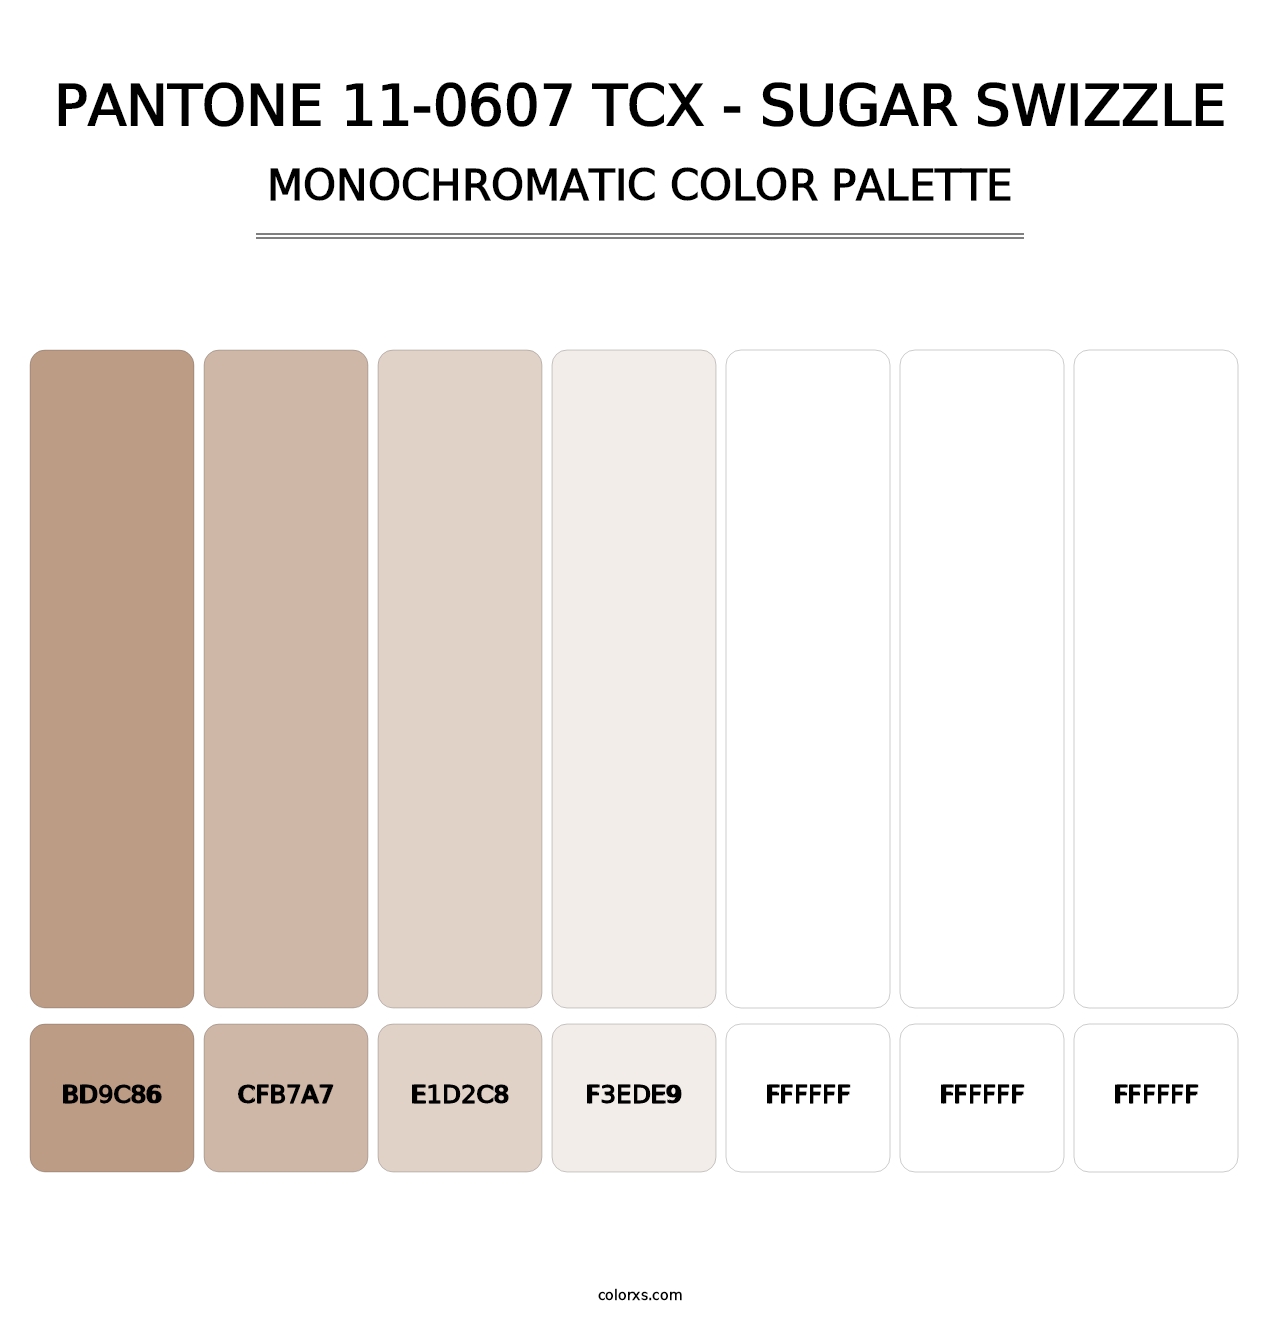 PANTONE 11-0607 TCX - Sugar Swizzle - Monochromatic Color Palette